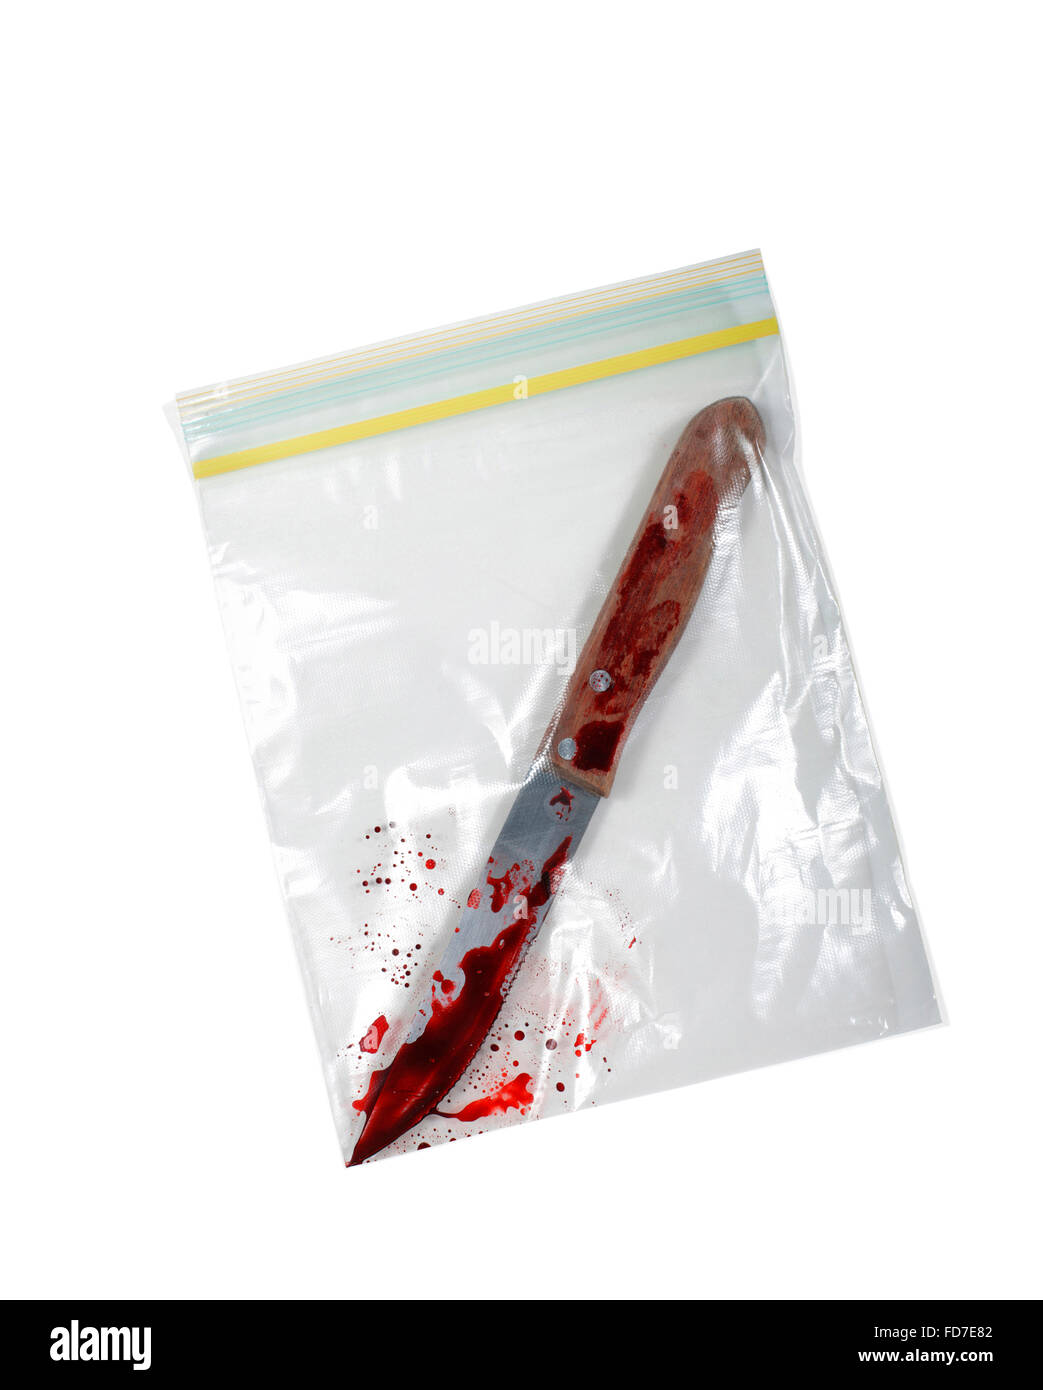 Portrait d'un couteau sanglant dans le sac en plastique Banque D'Images